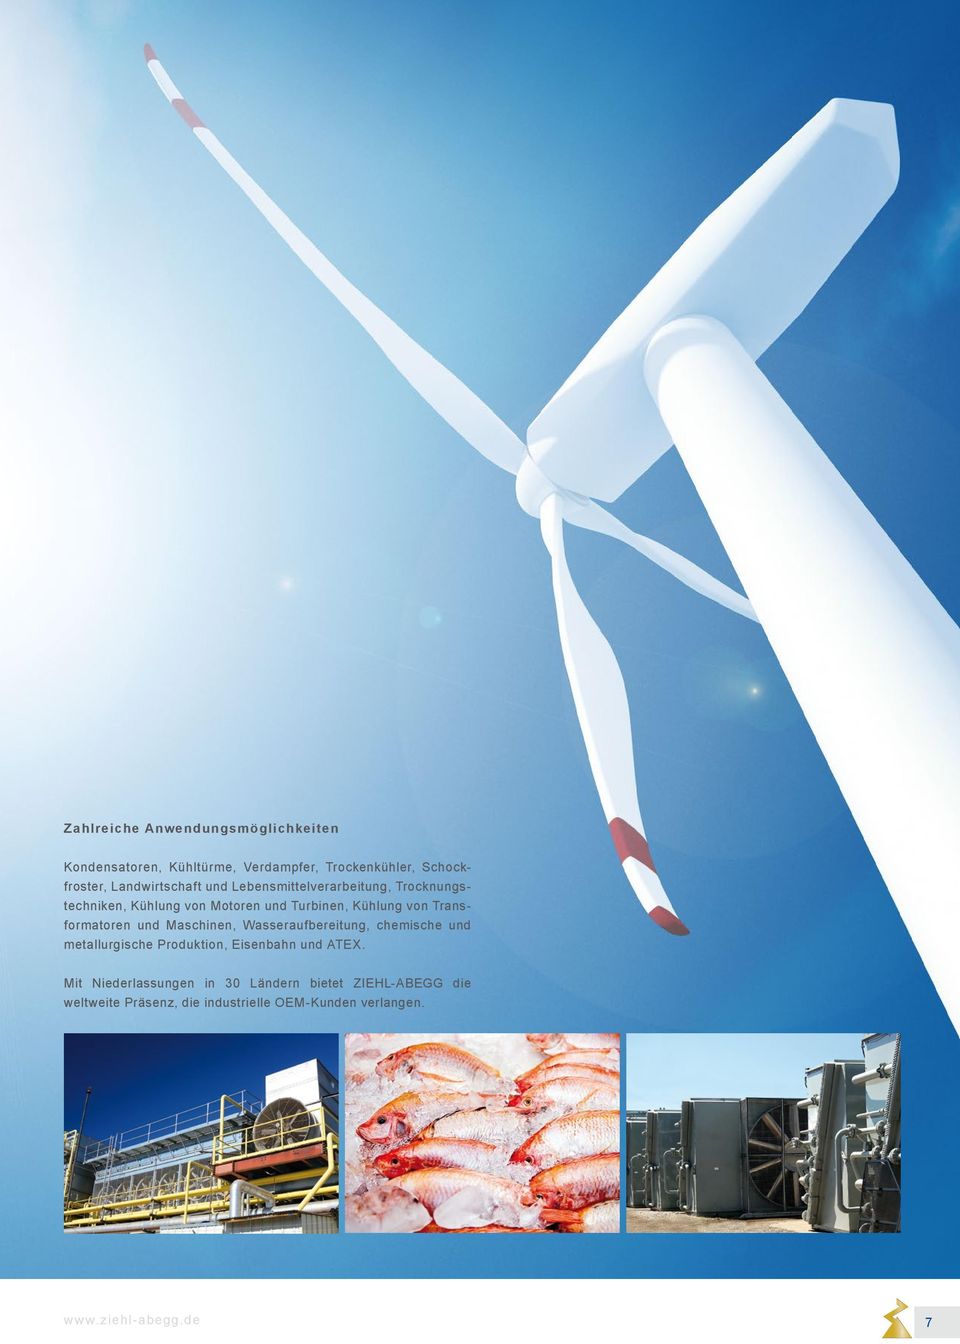 Transformatoren und Maschinen, Wasseraufbereitung, chemische und metallurgische Produktion, Eisenbahn und ATEX.